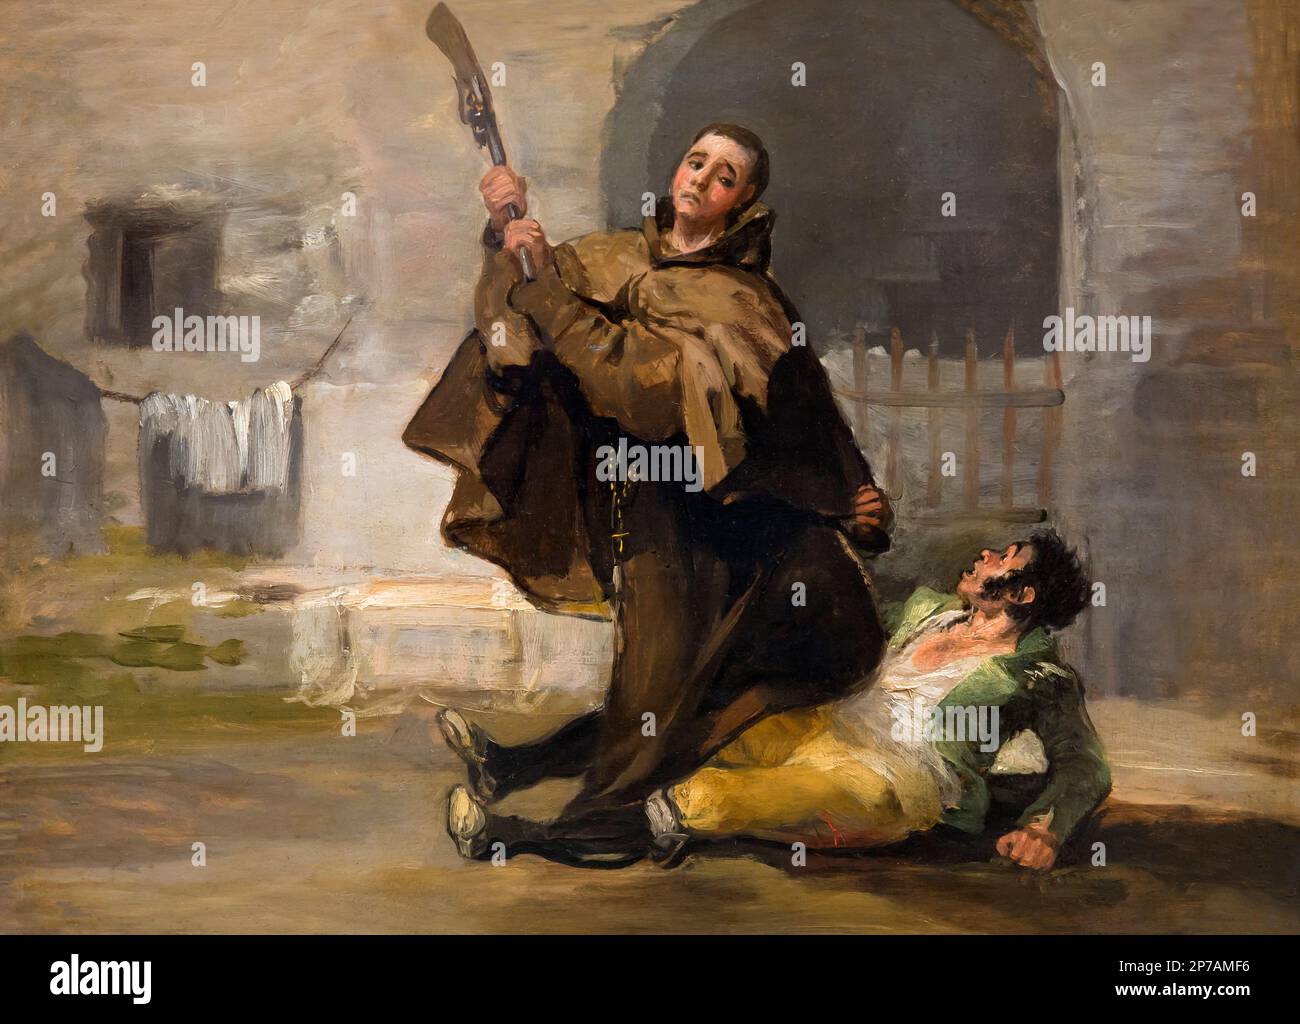 Friar Pedro Clubs El Maragato avec le bout du canon, Francisco Goya, vers 1806, Art Institute of Chicago, Chicago, Illinois, États-Unis, Amérique du Nord, Banque D'Images